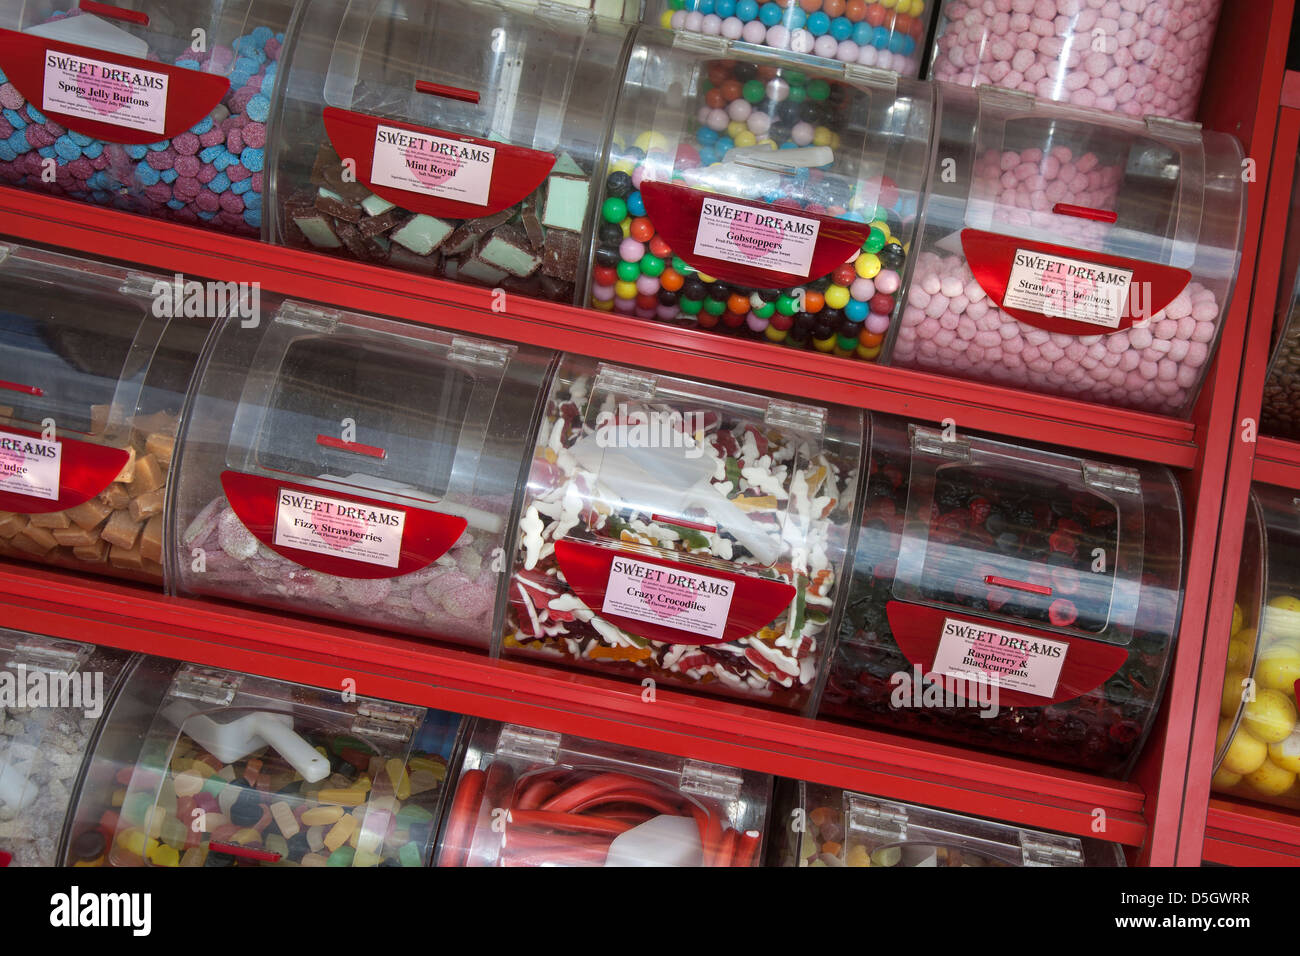 Sweet Dreams' Shop présentoir de comptoir, de conteneurs, de patates, de  l'alimentation, boutique, magasin de bonbons en sucre, dessert, bols et  plateaux de Pick & Mix Bonbons, Southport, Royaume-Uni Photo Stock -